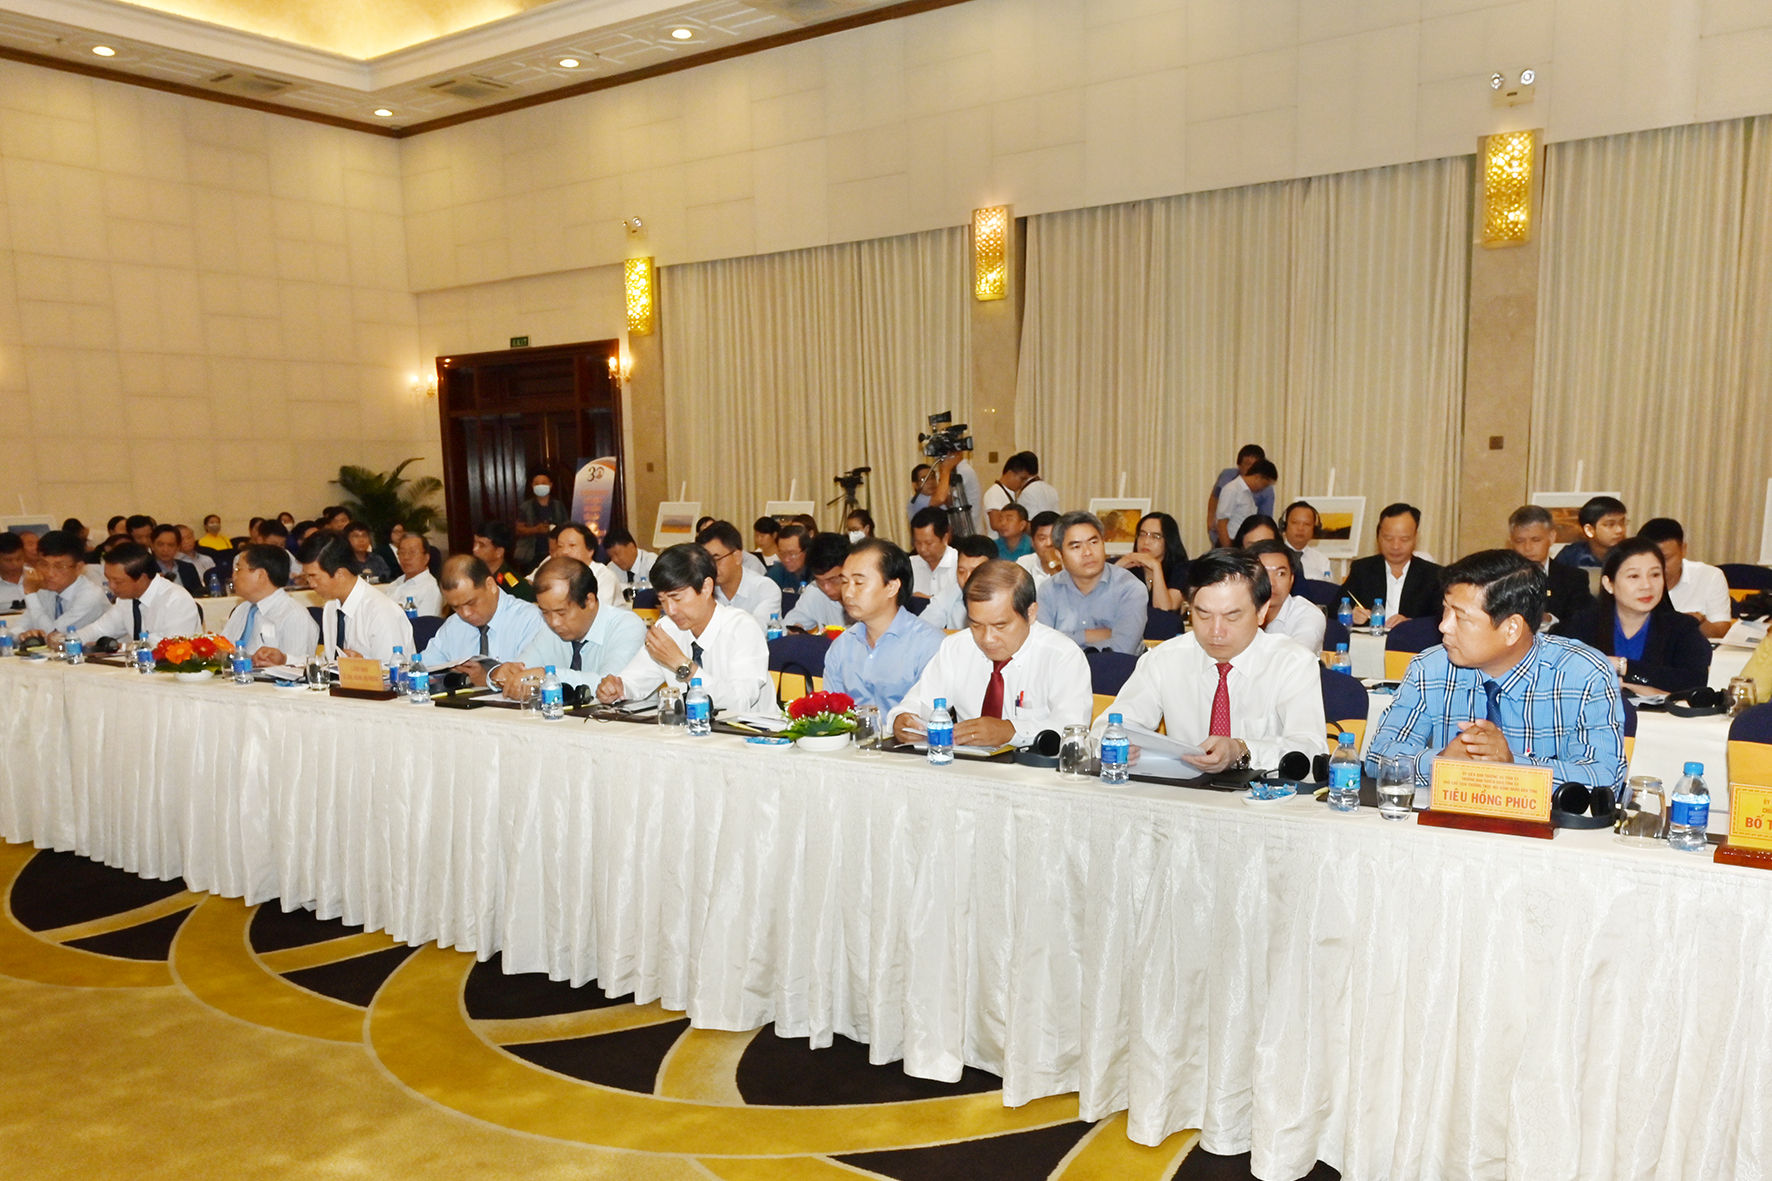 Hội nghị gặp gỡ các nhà đầu tư năm 2022- Bình Thuận kết nối tiềm năng - Ảnh 2.